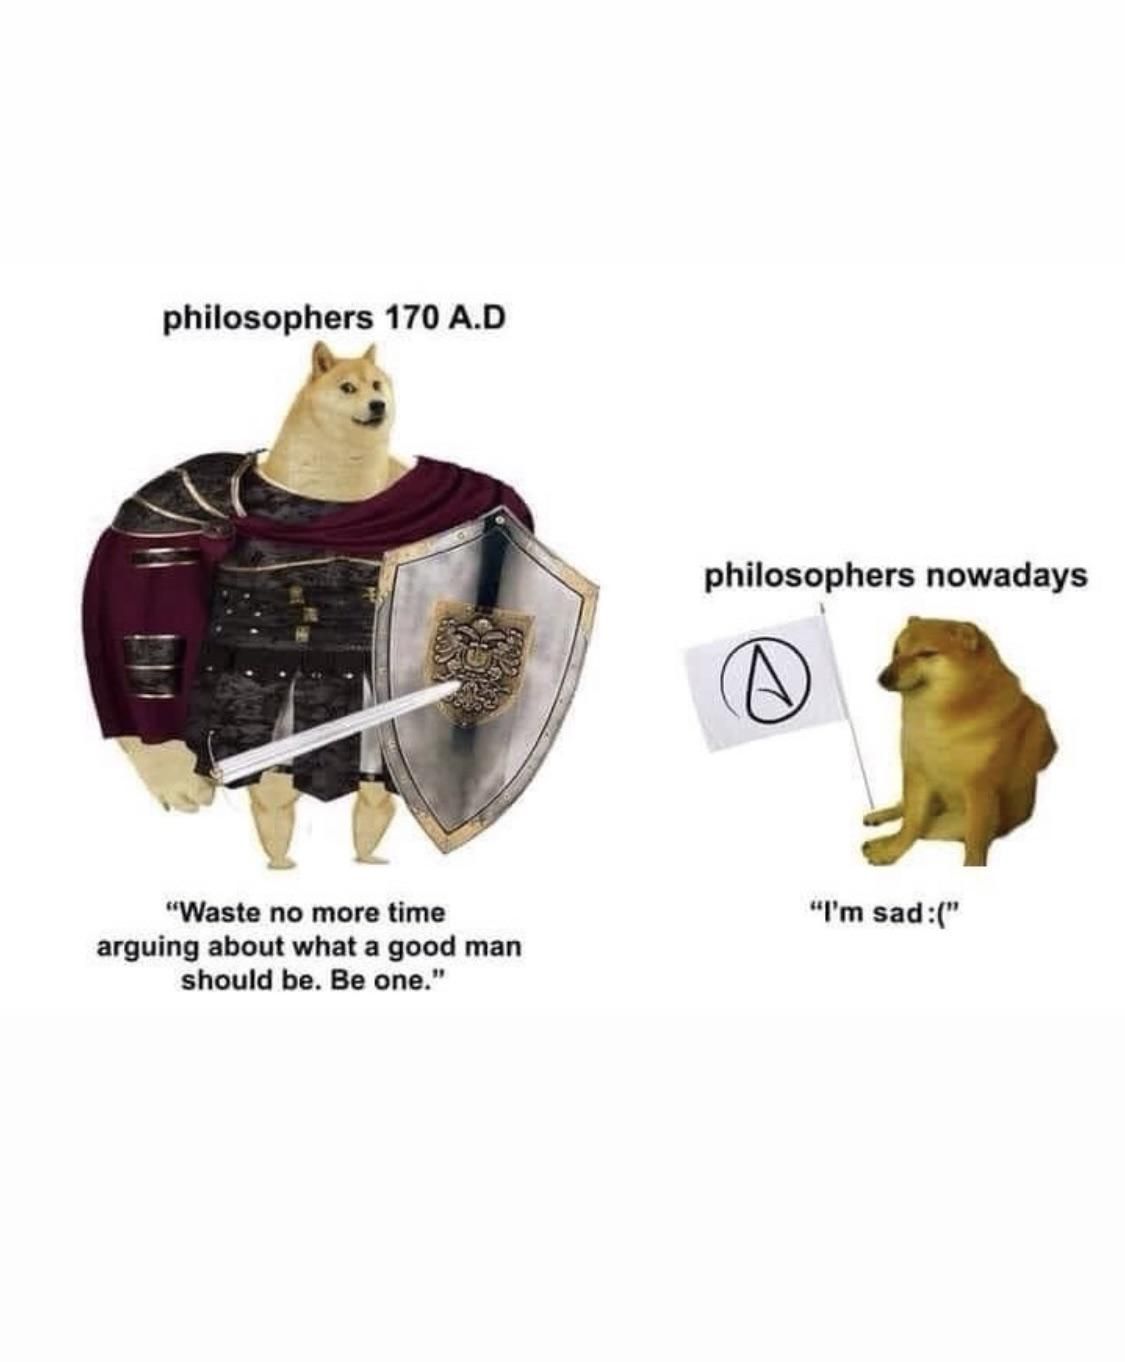 Philosophy is dead